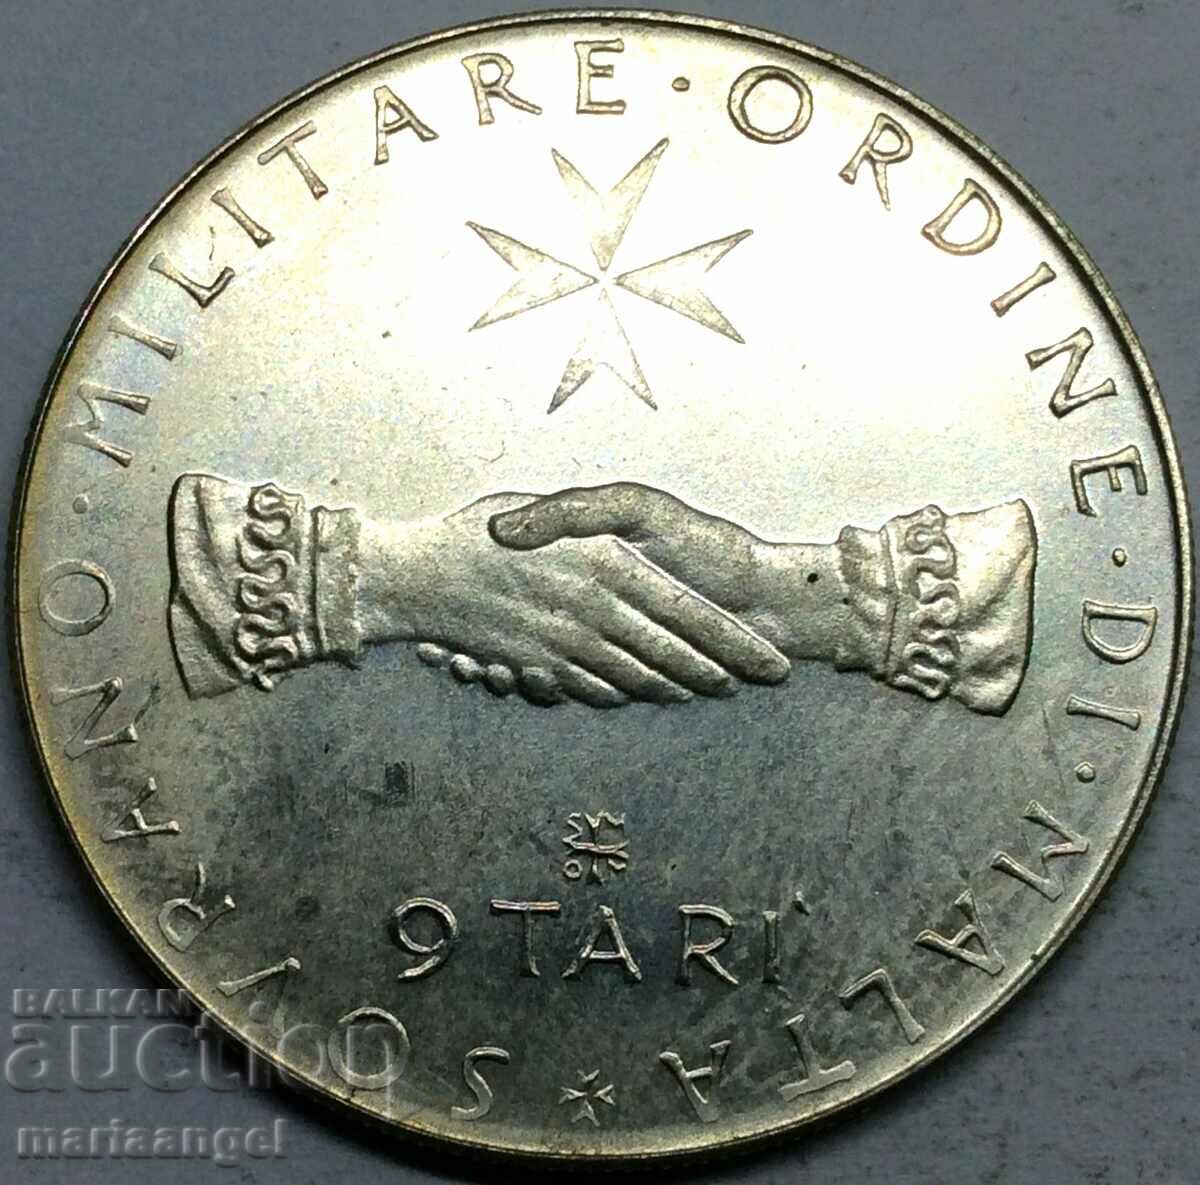 Malta 9 Tare 1975 PROOF 9g silver